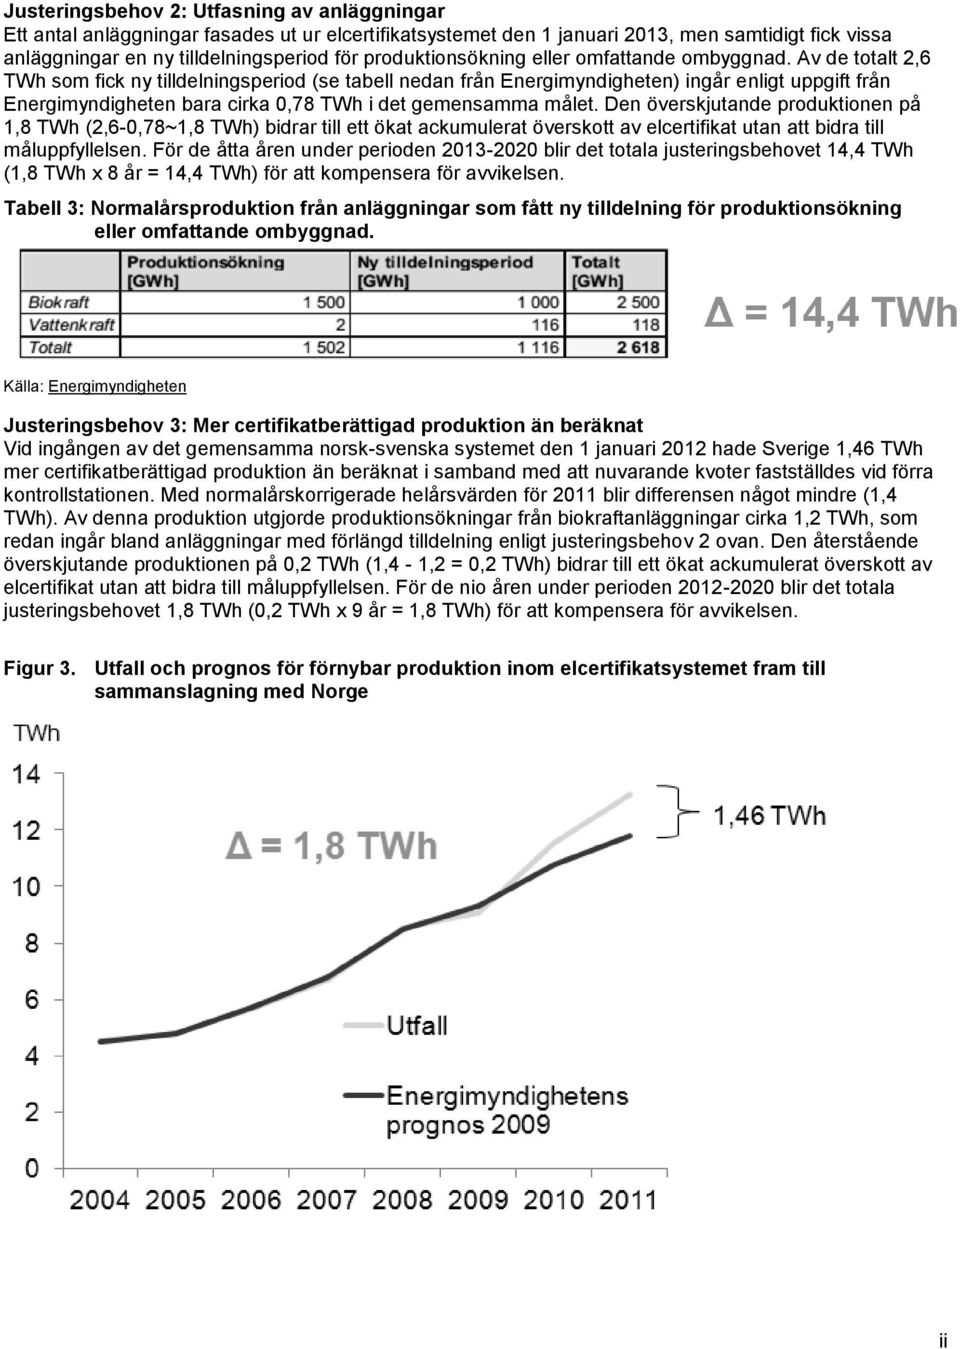 Av de totalt 2,6 TWh som fick ny tilldelningsperiod (se tabell nedan från Energimyndigheten) ingår enligt uppgift från Energimyndigheten bara cirka 0,78 TWh i det gemensamma målet.